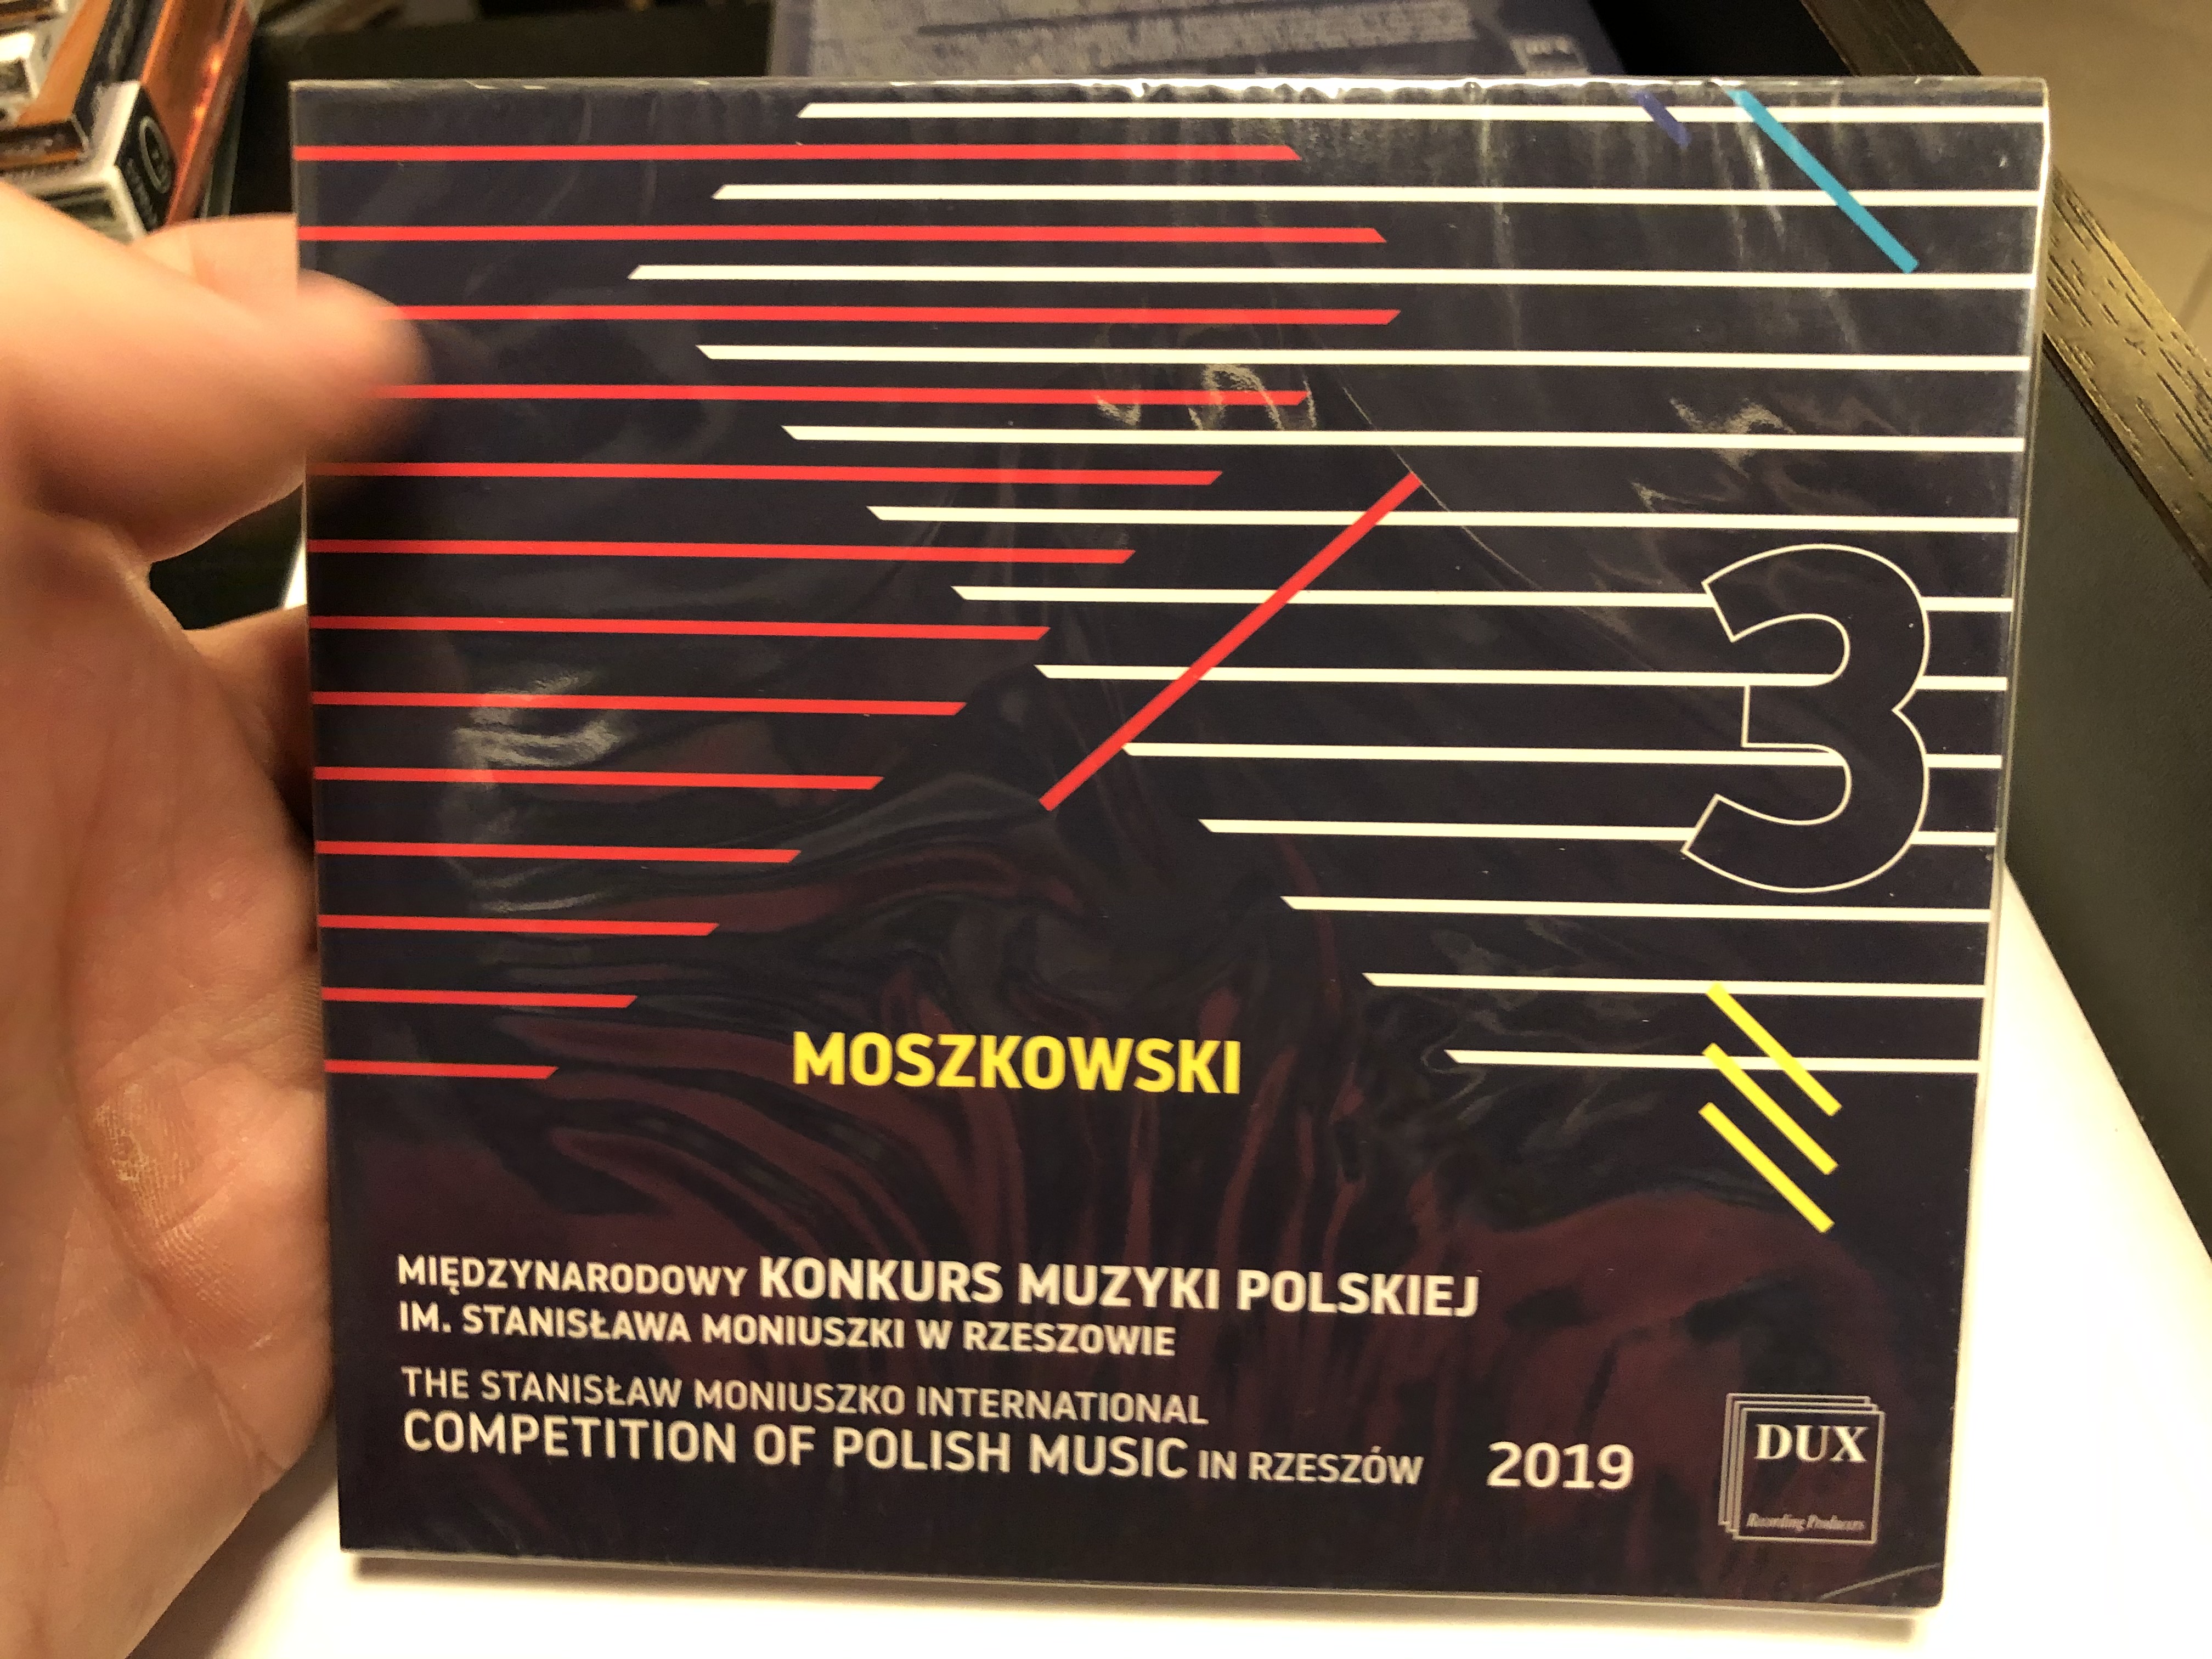 moszkowski-3-miedzynarodowy-konkurs-muzyki-polskiej-im.-stanislawa-moniuszki-w-rzeszowi-the-stanislaw-moniuszko-international-competition-of-polish-music-in-rzeszow-2019-dux-recording-pr-1-.jpg